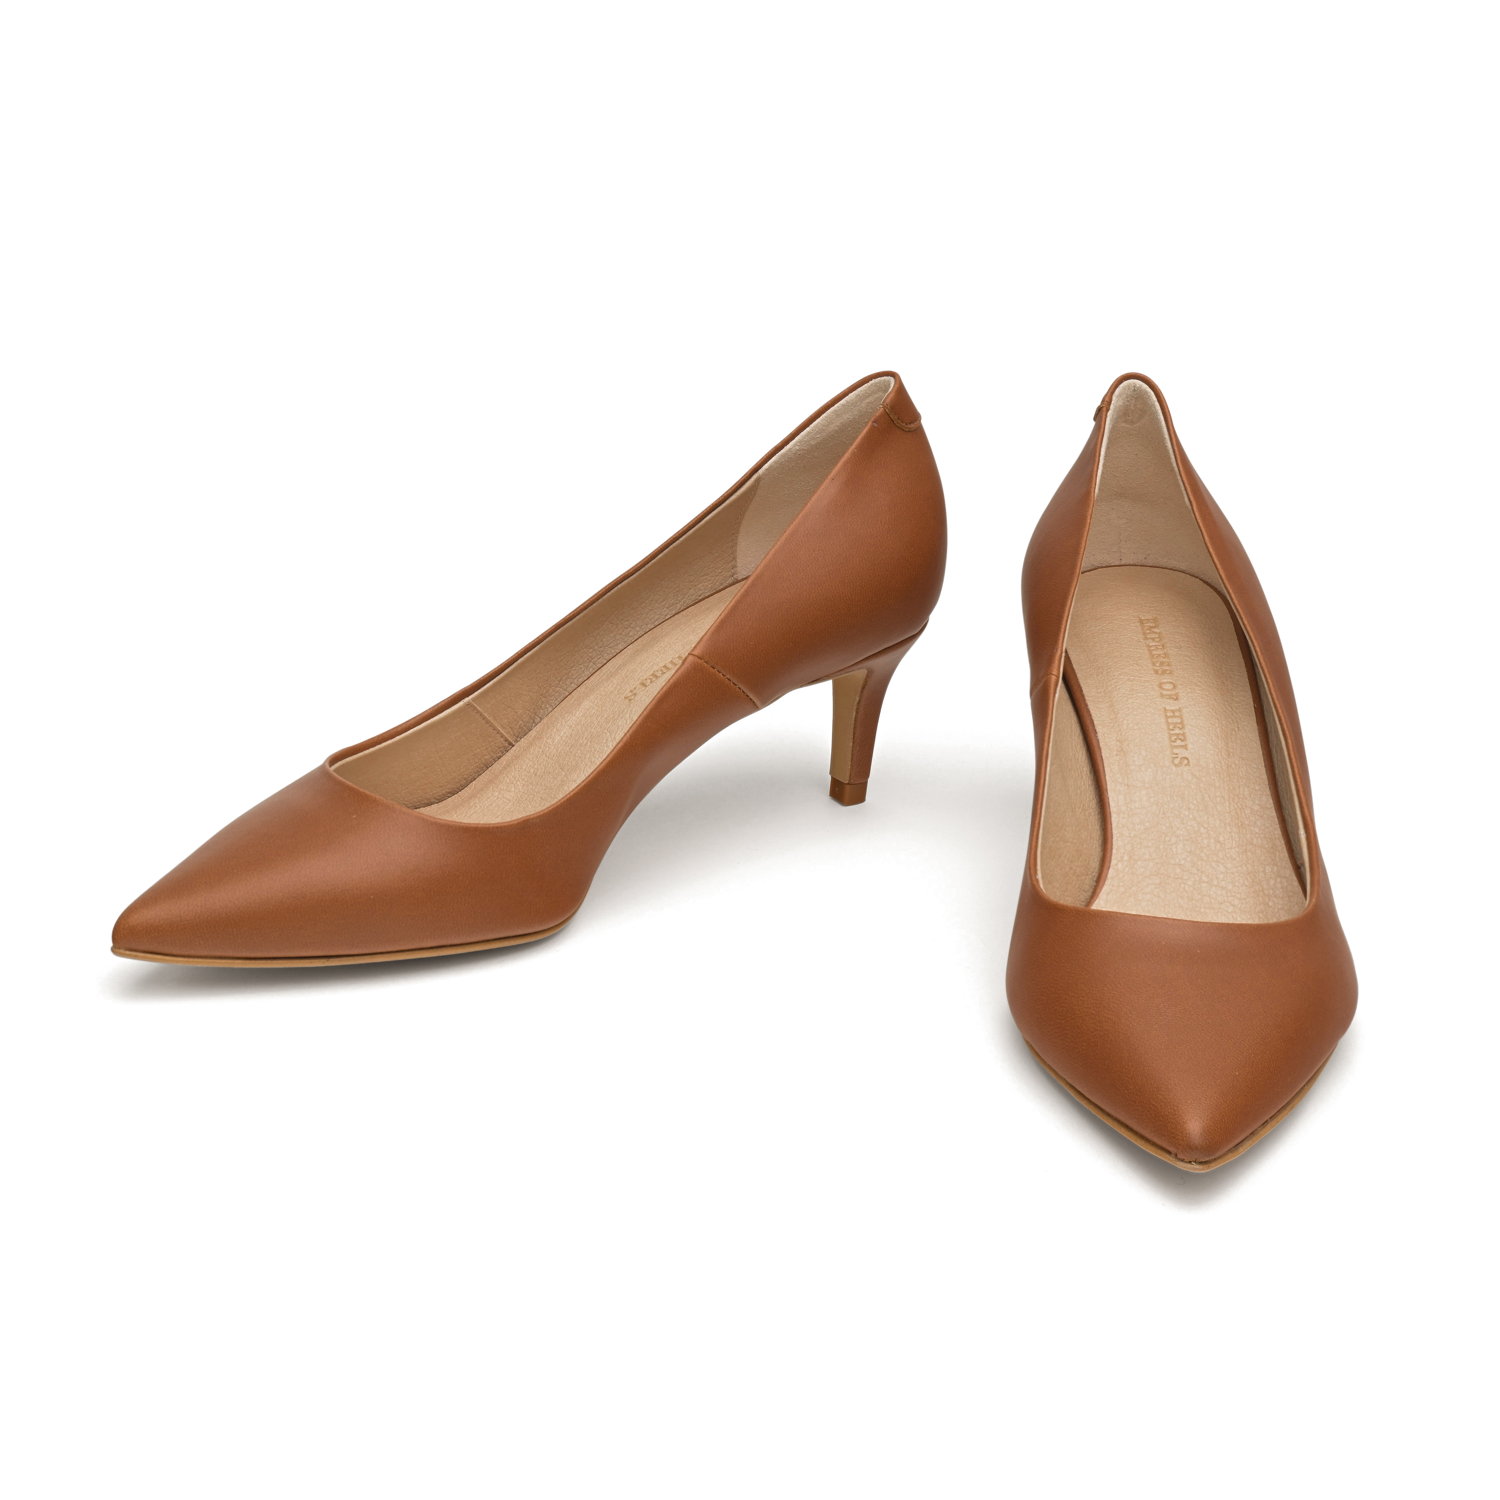 Cute Brown Shoes - High Heel Sandals - Ankle Strap Heels - Lulus